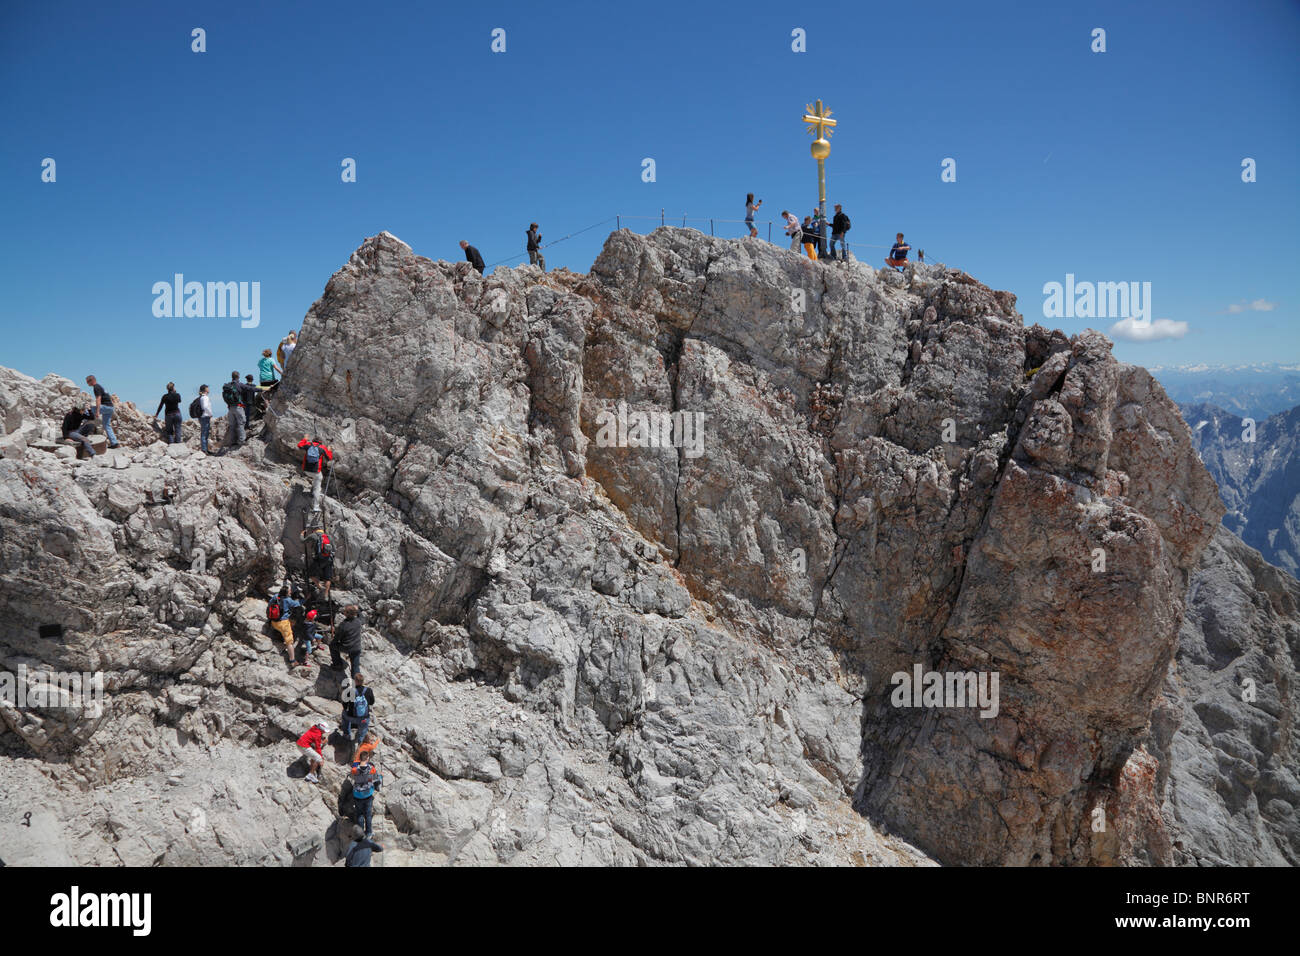 Les touristes à la croix d'Or - le point le plus élevé en Allemagne sur le sommet du mont Zugspitze à 2,962m au-dessus du niveau de la mer - sur un jour d'été ensoleillé Banque D'Images